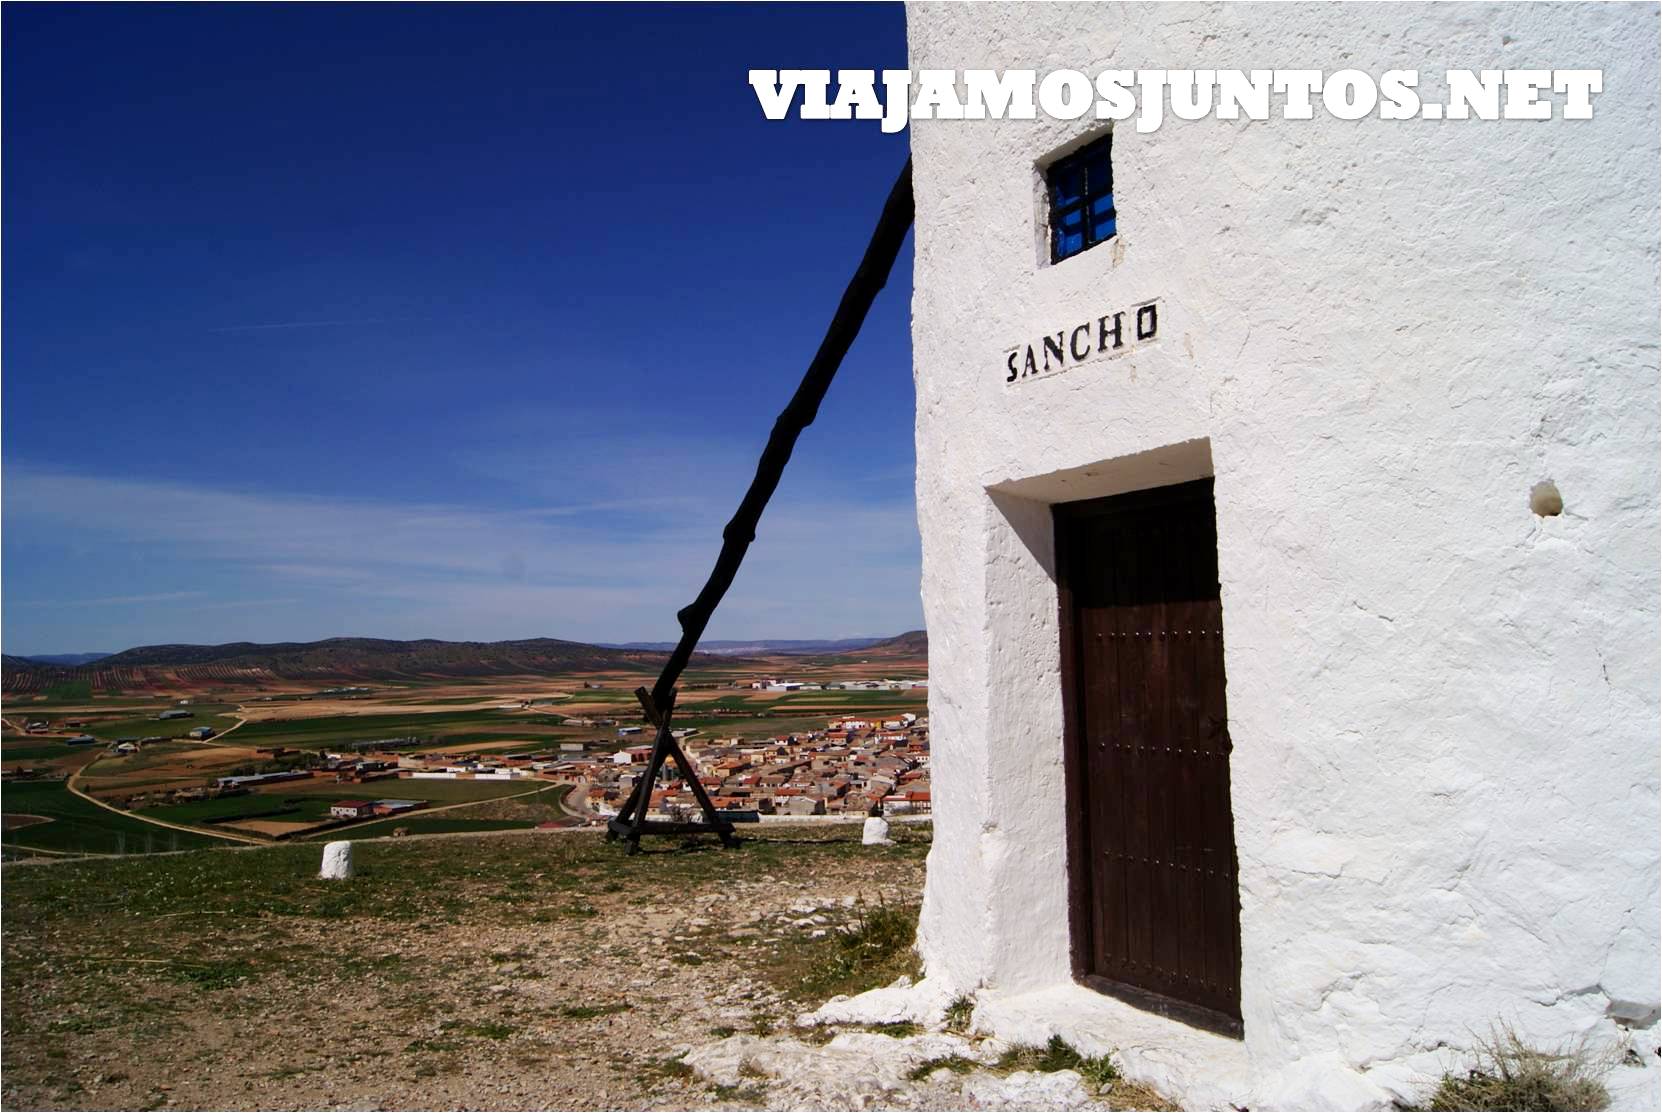 Castillo, molinos, molinos de viento, consuegra, castilla la mancha, pueblos con encanto, escaparas, rural, don quijote